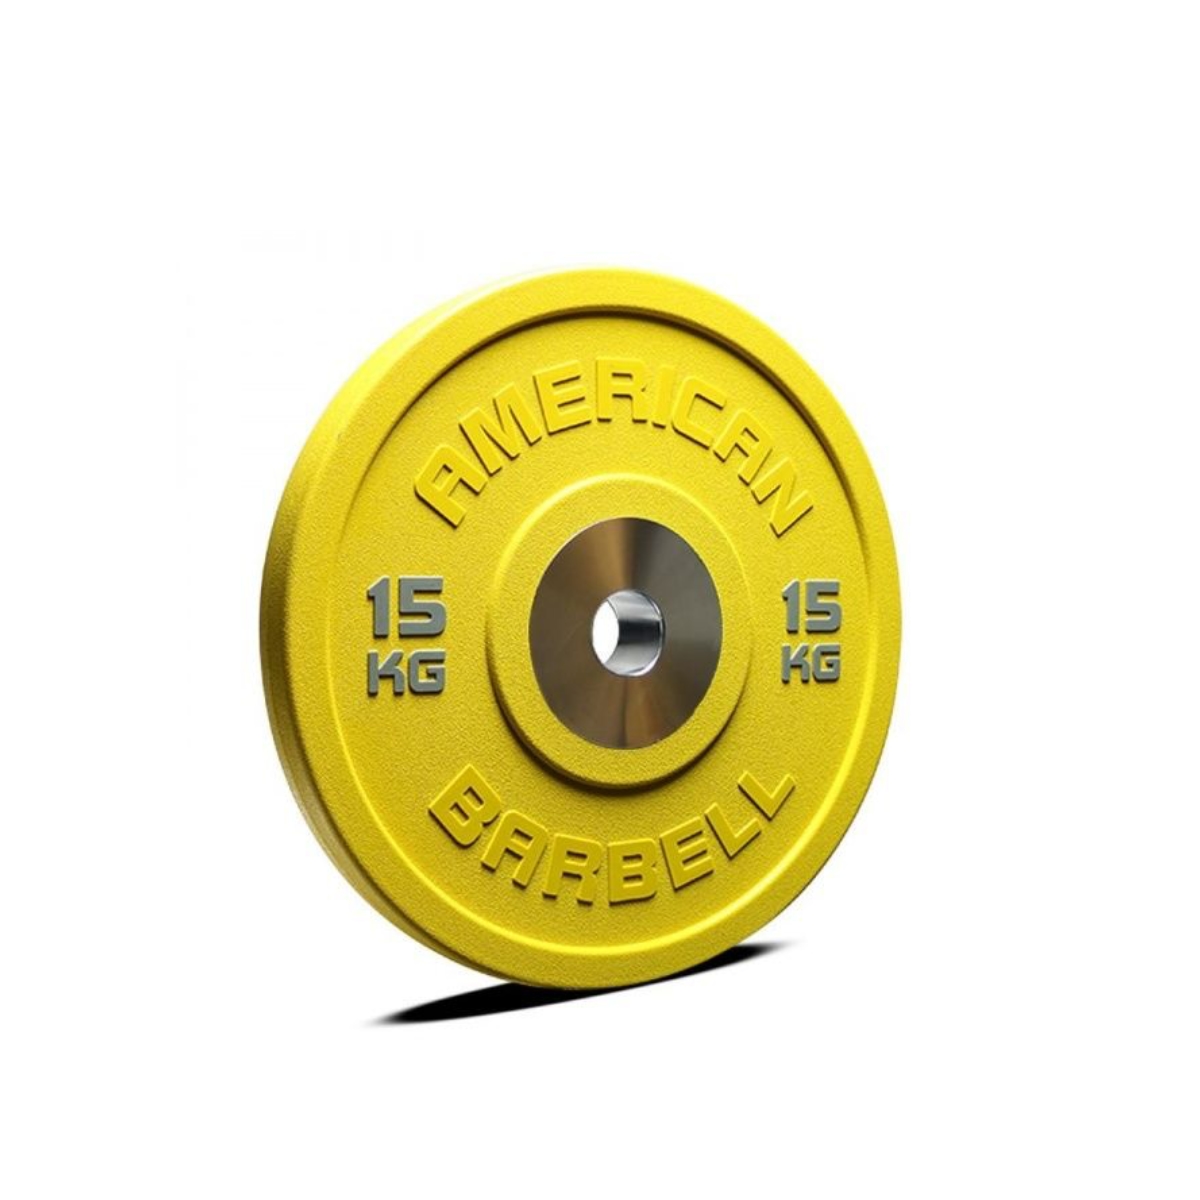 Brug American barbell Color Urethane Pro Series Bumper Plate 15 kg til en forbedret oplevelse